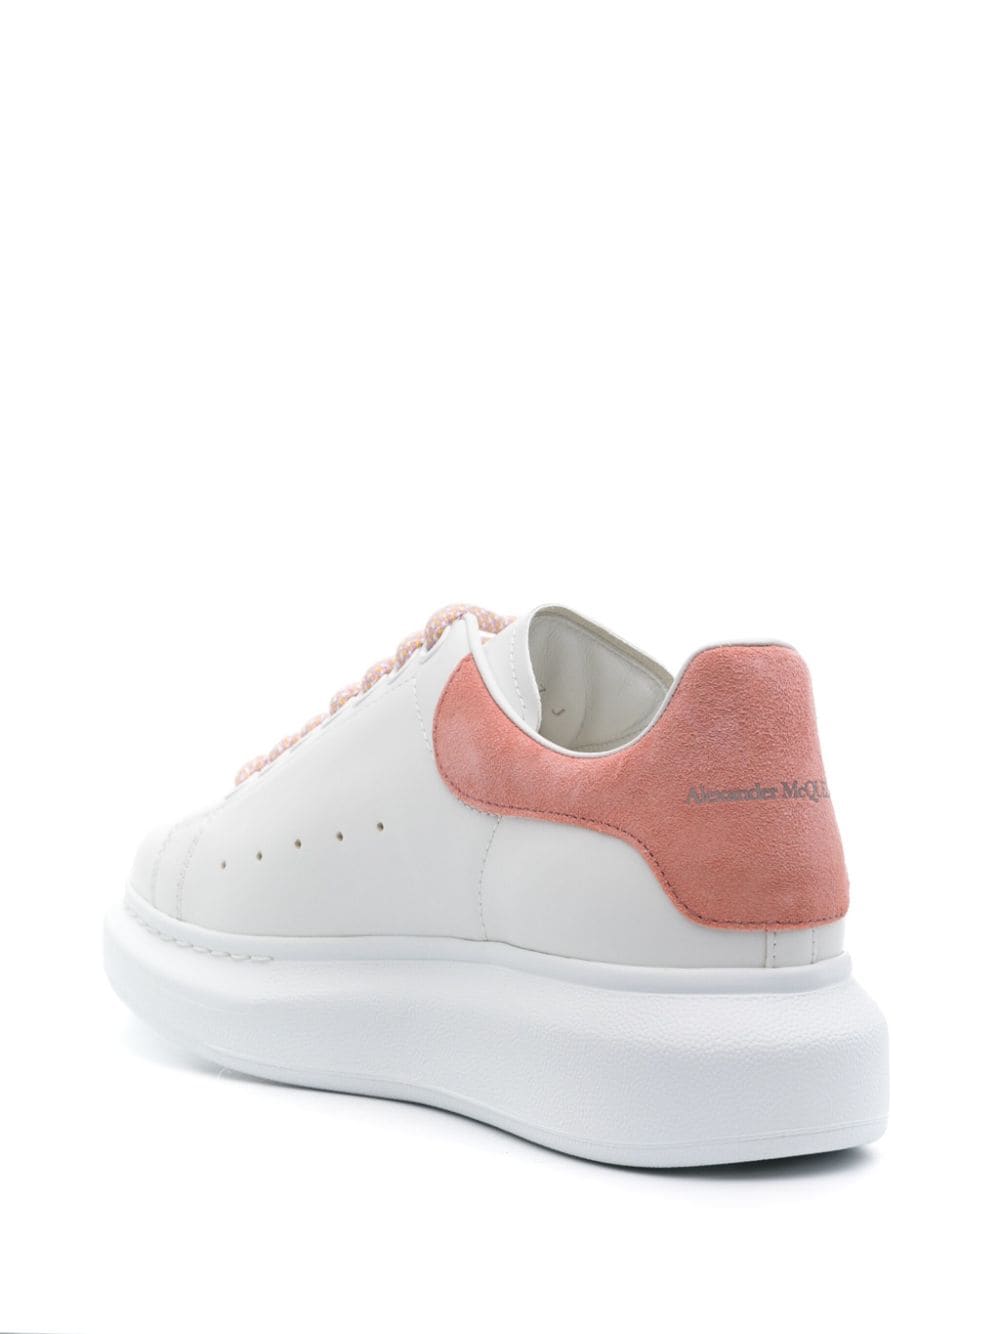 Alexander Mcqueen Sneakers Pink